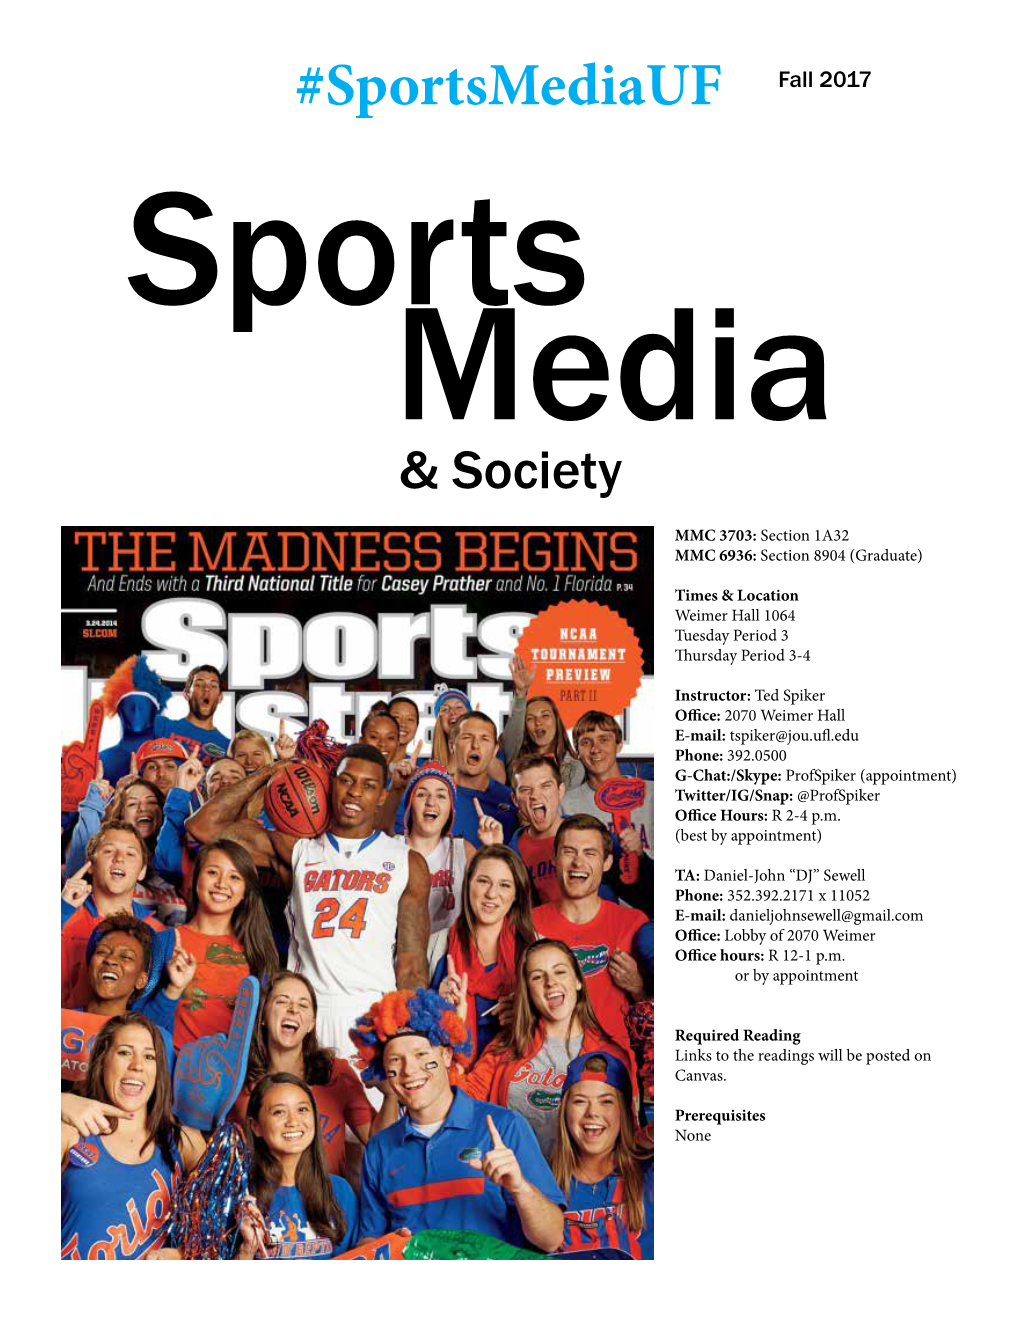 Sportsmediauf Fall 2017 Sports Media & Society